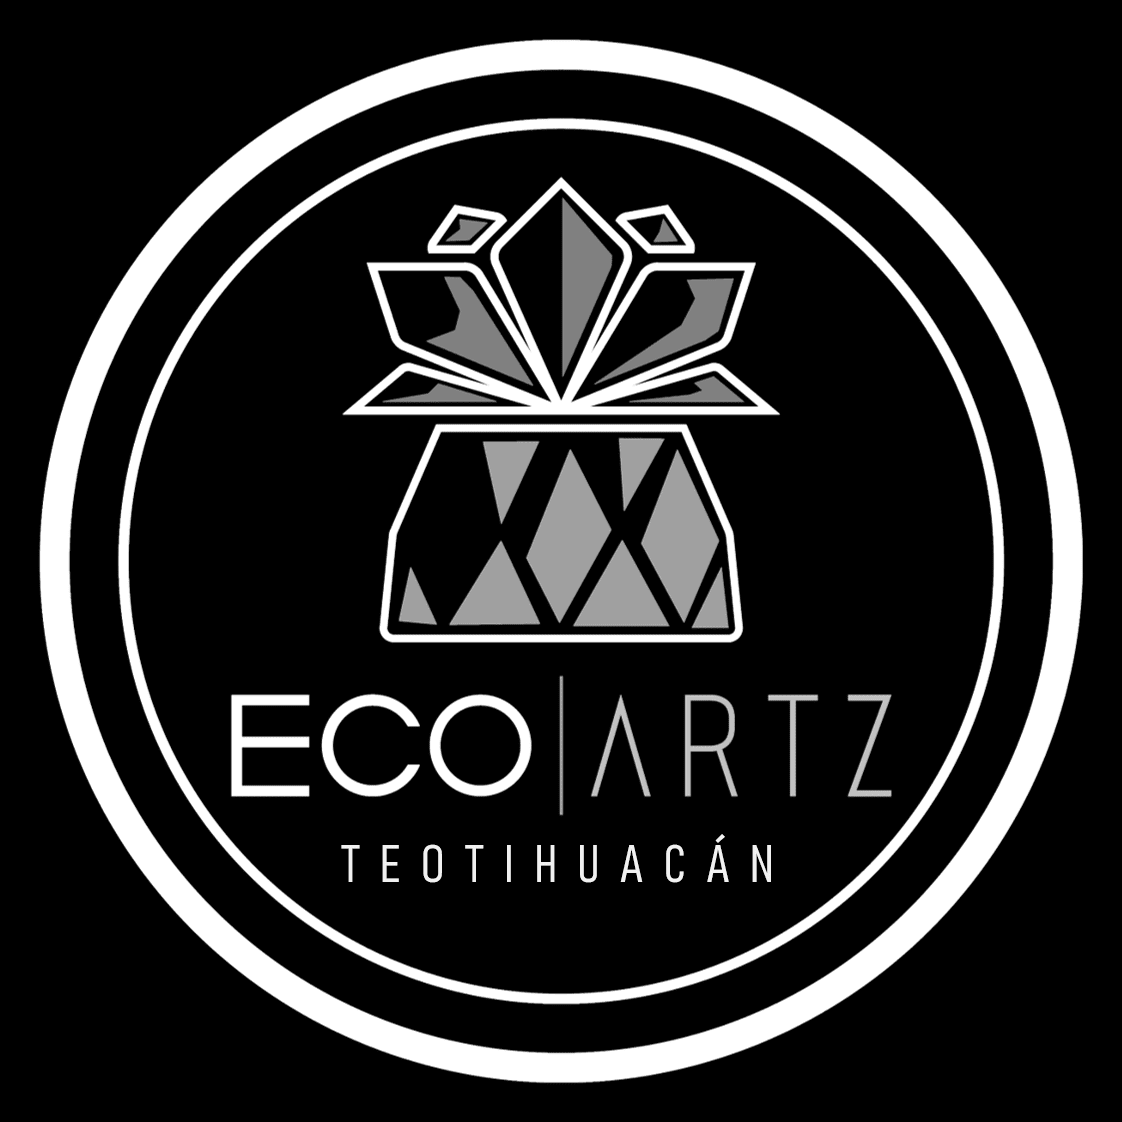 Eco Artz